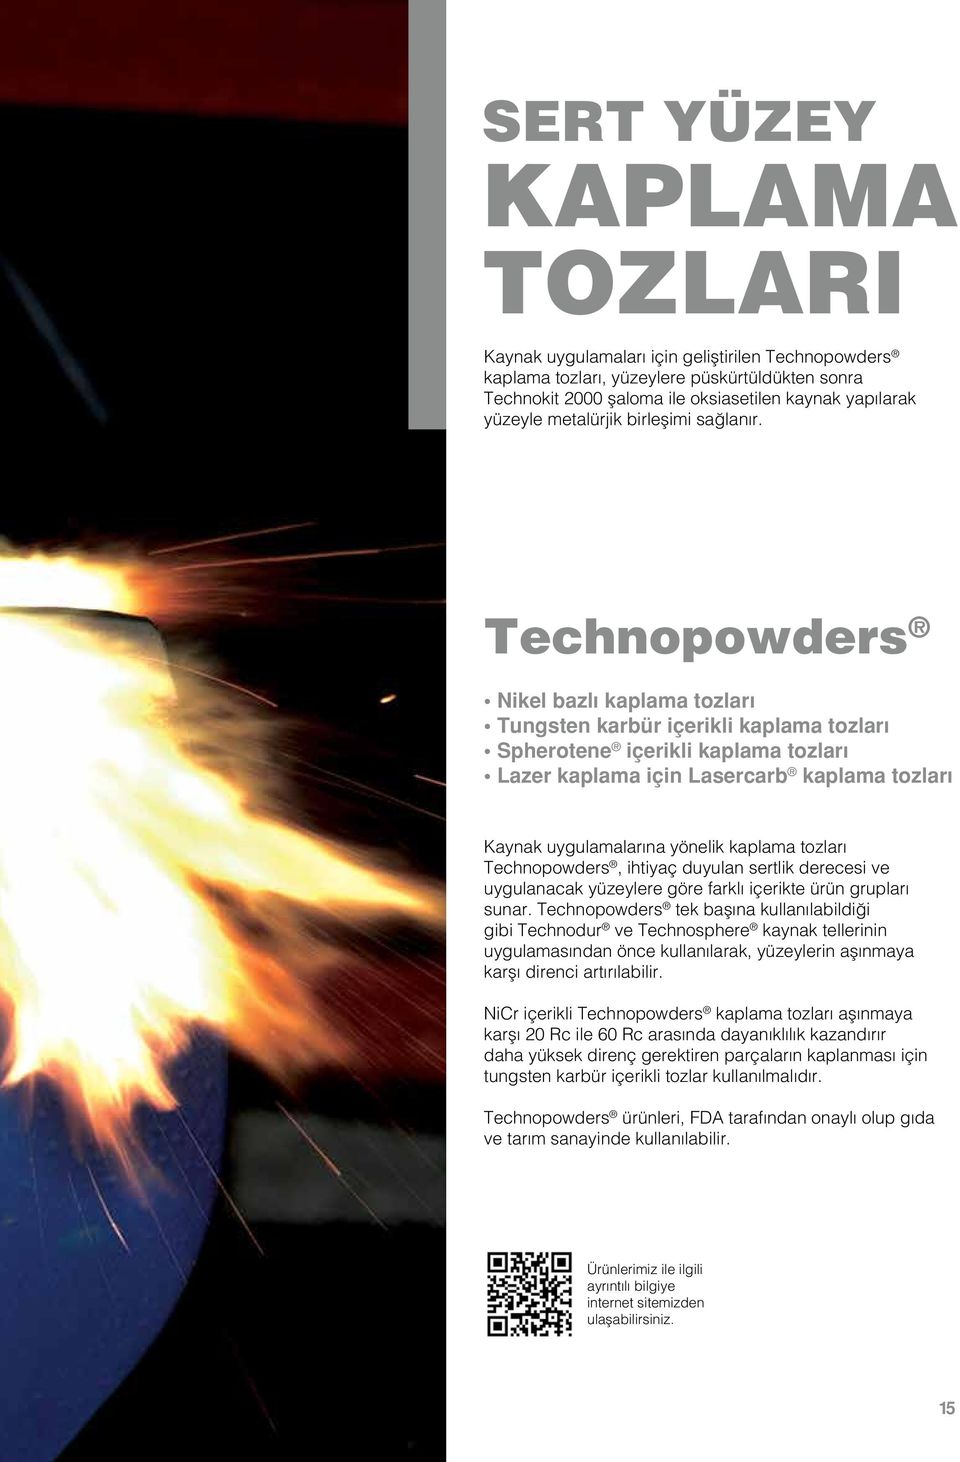 Technopowders Nikel bazlı kaplama tozları Tungsten karbür içerikli kaplama tozları Spherotene içerikli kaplama tozları Lazer kaplama için Lasercarb kaplama tozları Kaynak uygulamalarına yönelik